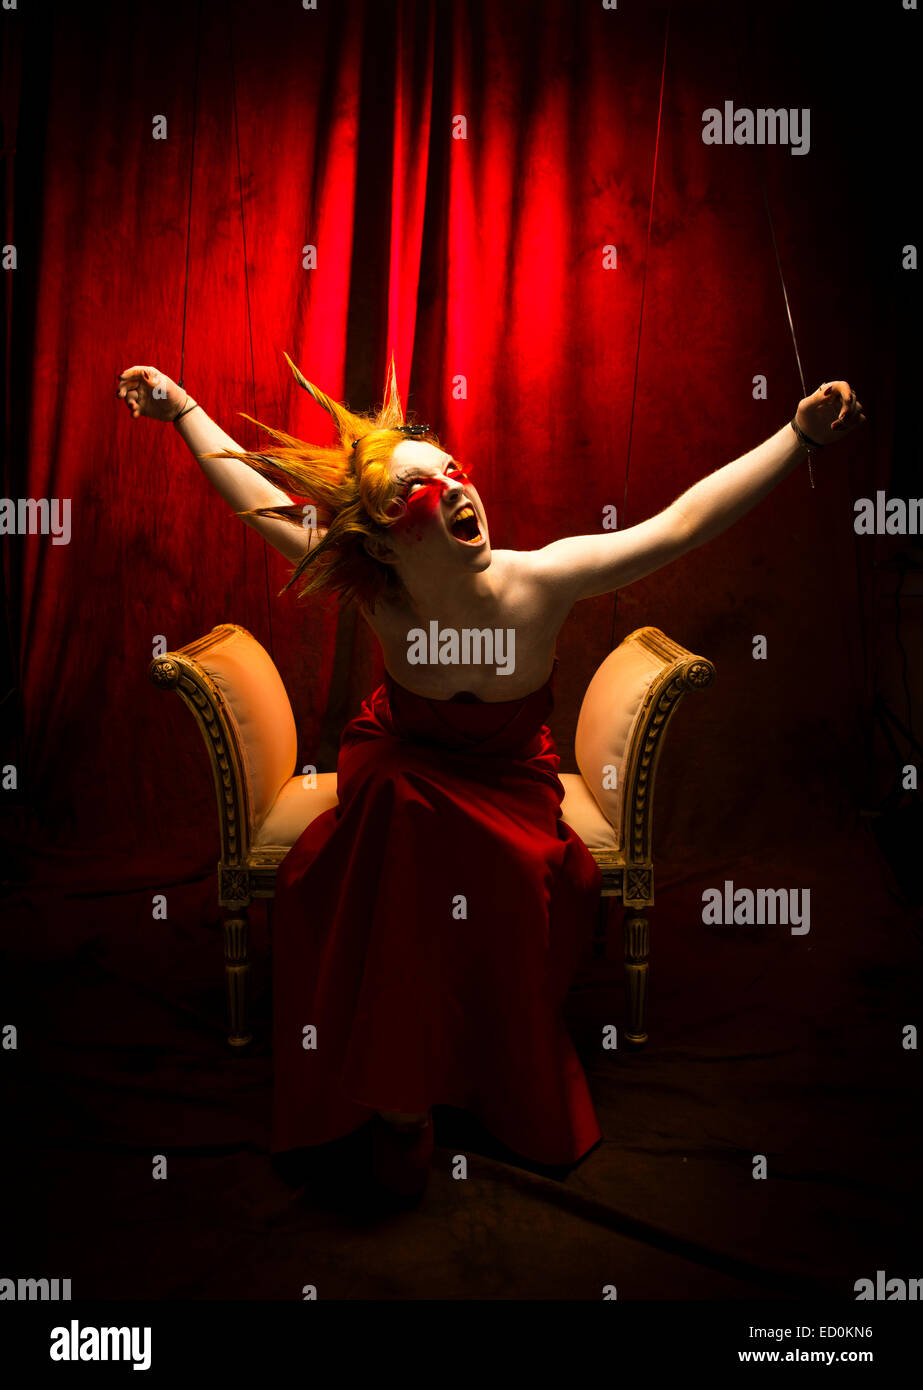 Fantasy makeover fotografía - Seven Deadly Sins - Wrath : una joven chica modelo con puntiagudos alegre cabello hecha para parecerse a una cara blanca de porcelana pintada de títere y posando como una muñeca en un estudio de fotografía vistiendo una levita vestido vestido rojo Foto de stock